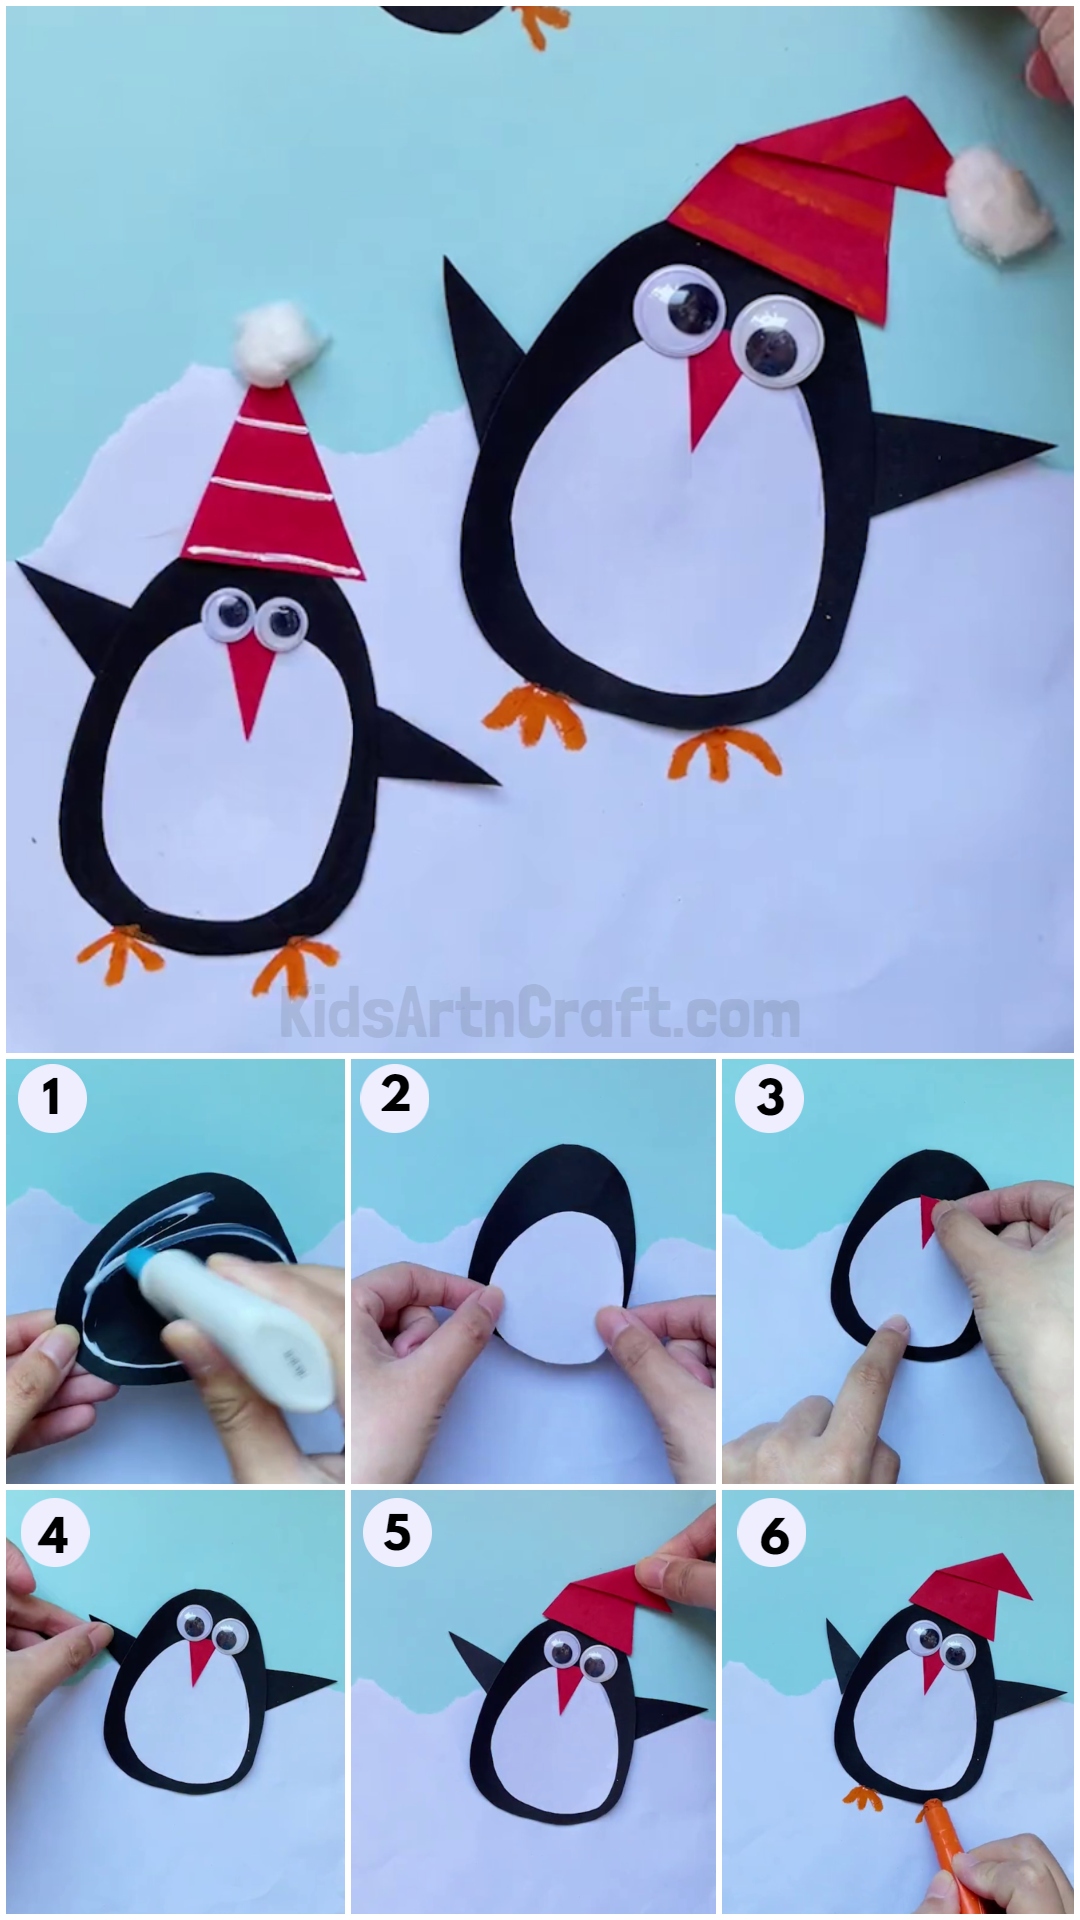 DIY Easy Paper Penguin Craft For Preschoolers-Preschoolers can make a paper penguin craft with ease